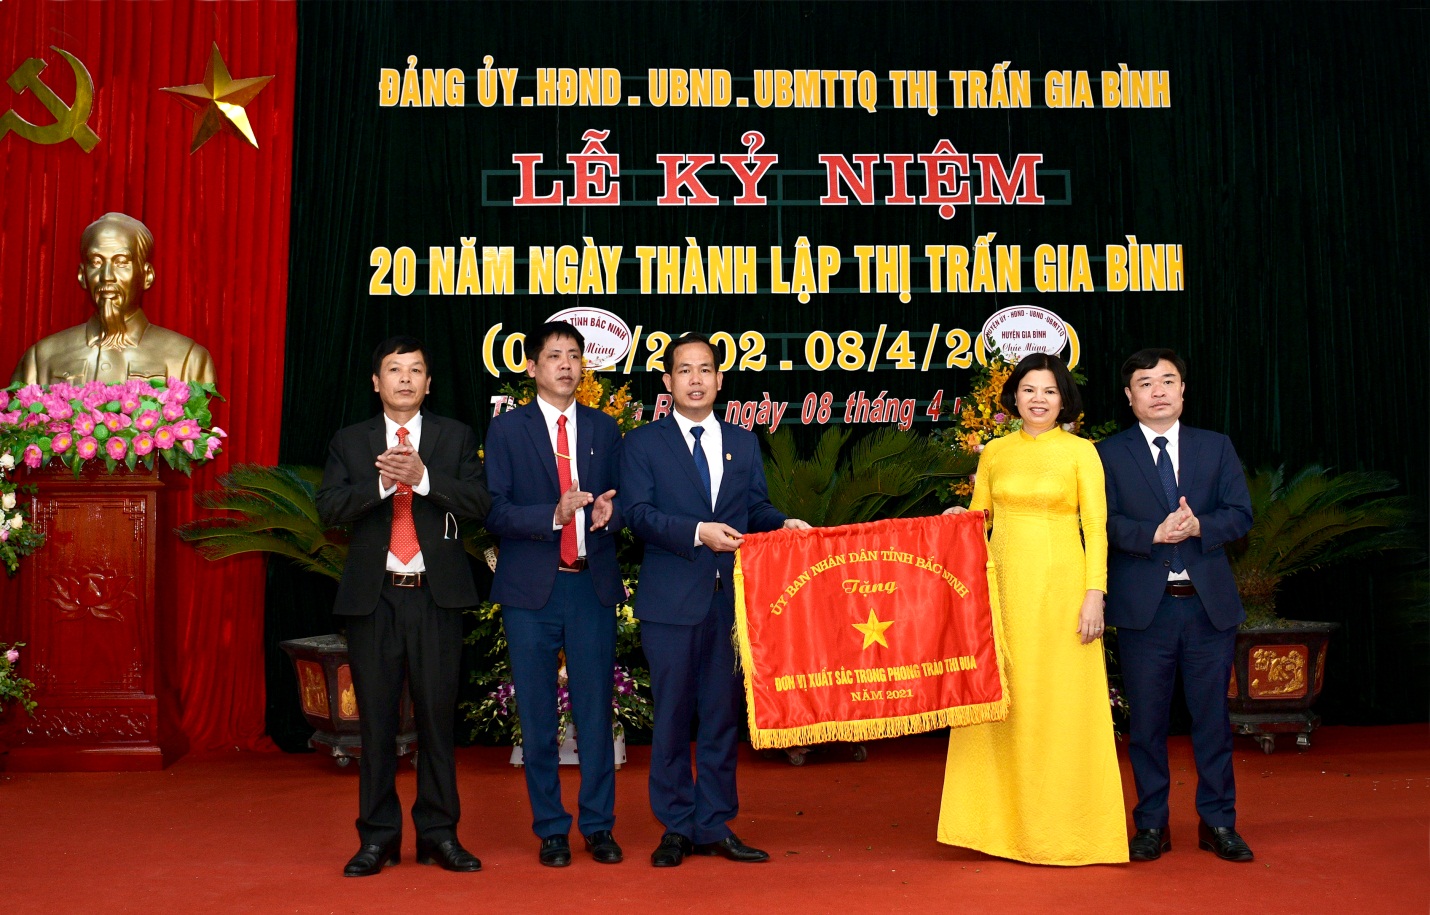 Chủ tịch UBND tỉnh Bắc Ninh Nguyễn Hương Giang trao Cờ thi đua cho thị trấn Gia Bình - Đơn vị xuất sắc năm 2021.